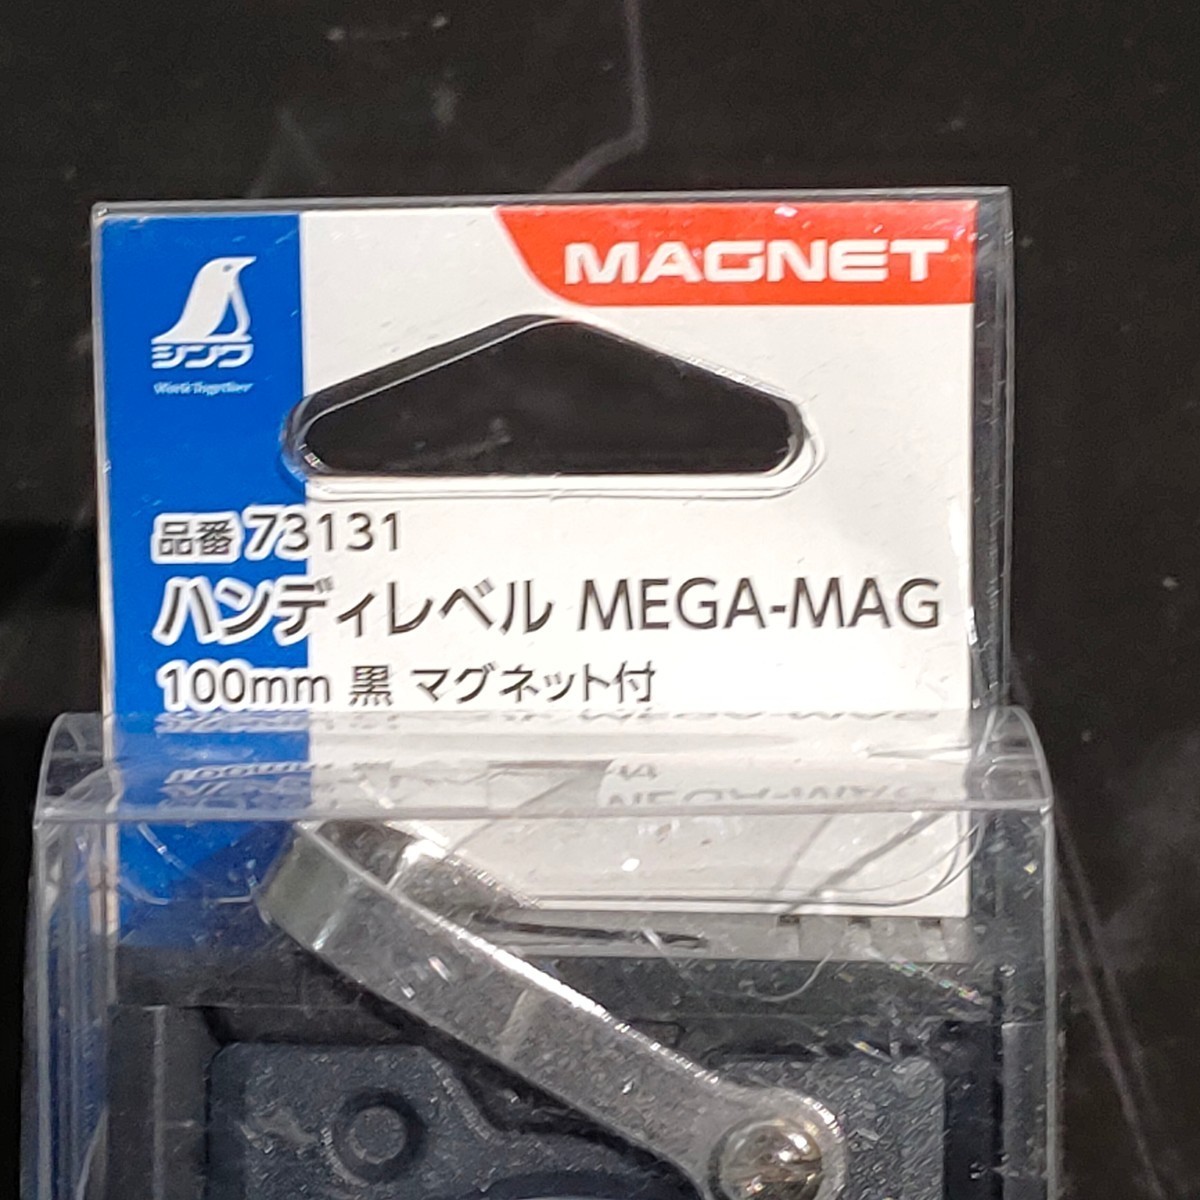 未使用品 シンワ測定 Shinwa ハンディレベル MEGA-MAG 100mm 黒 マグネット付 73131_画像2